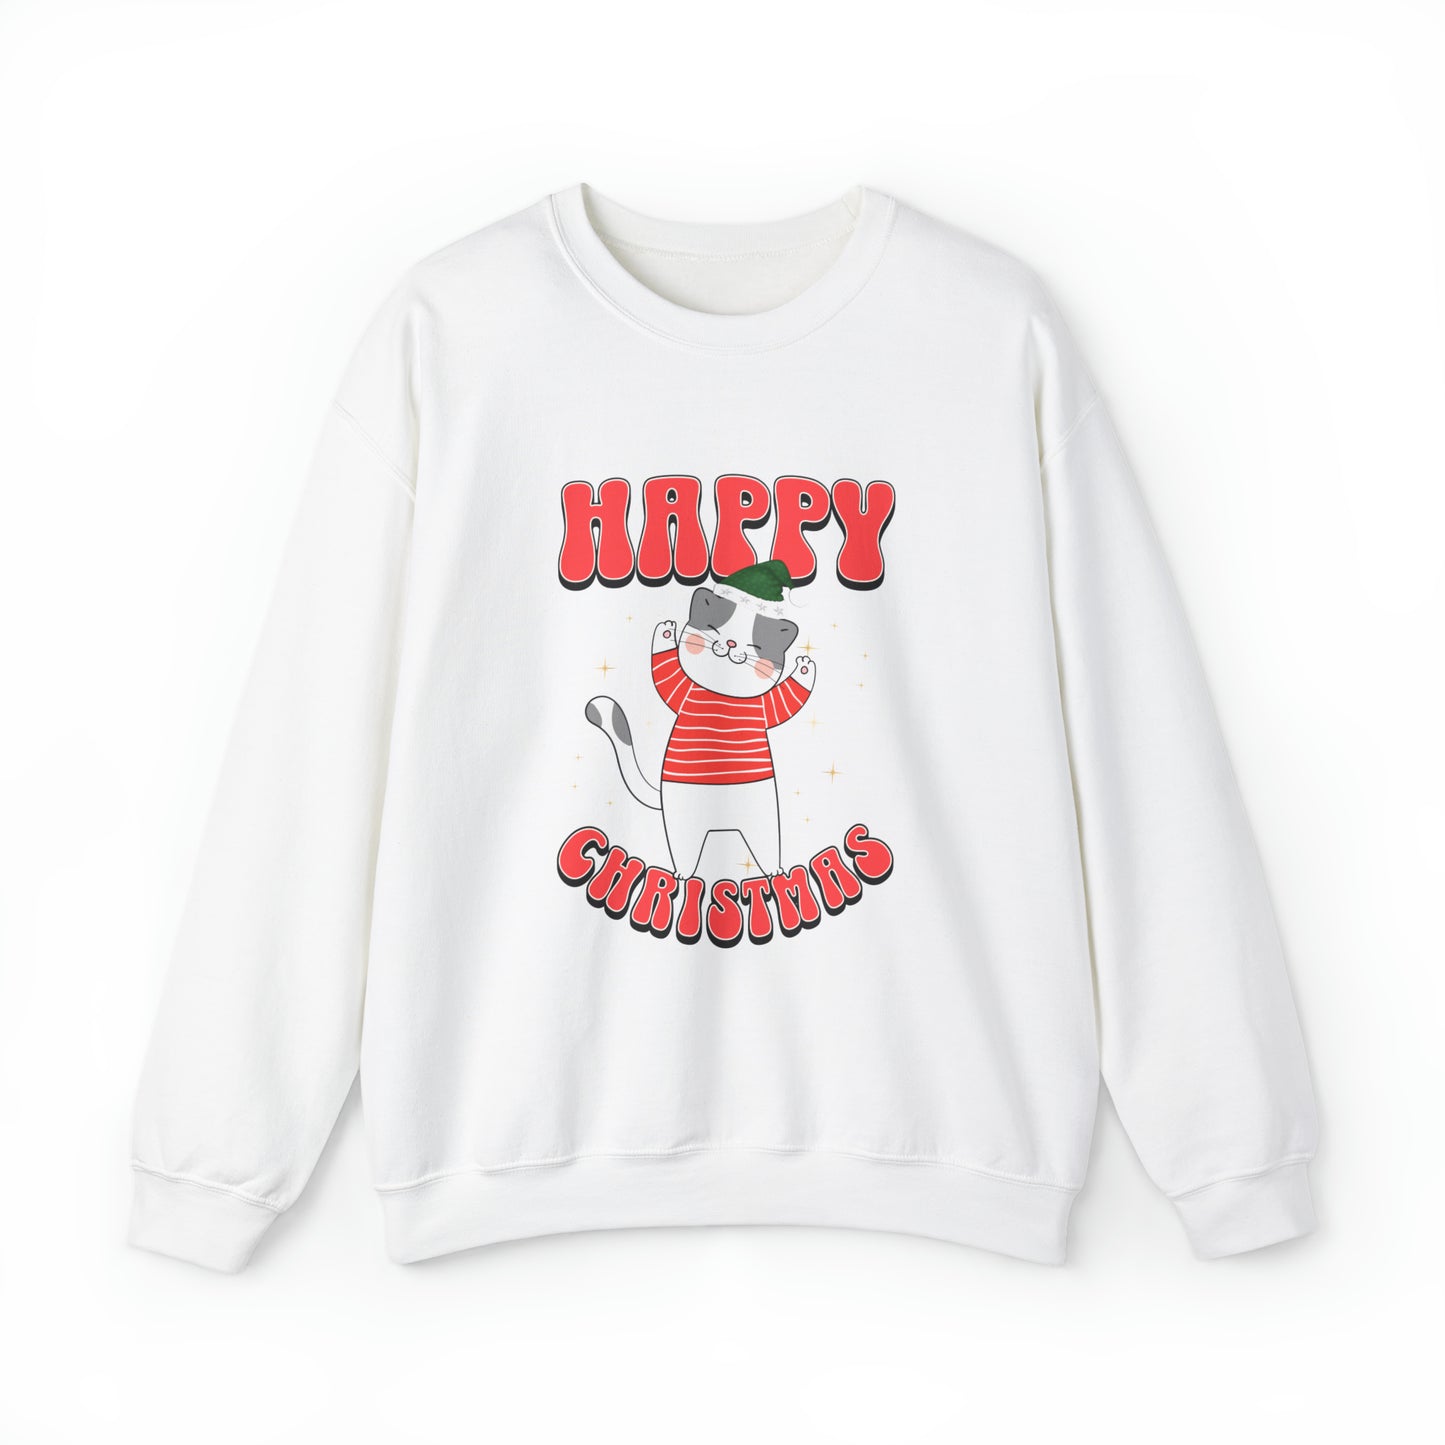 Happy Christmas Sweatshirt